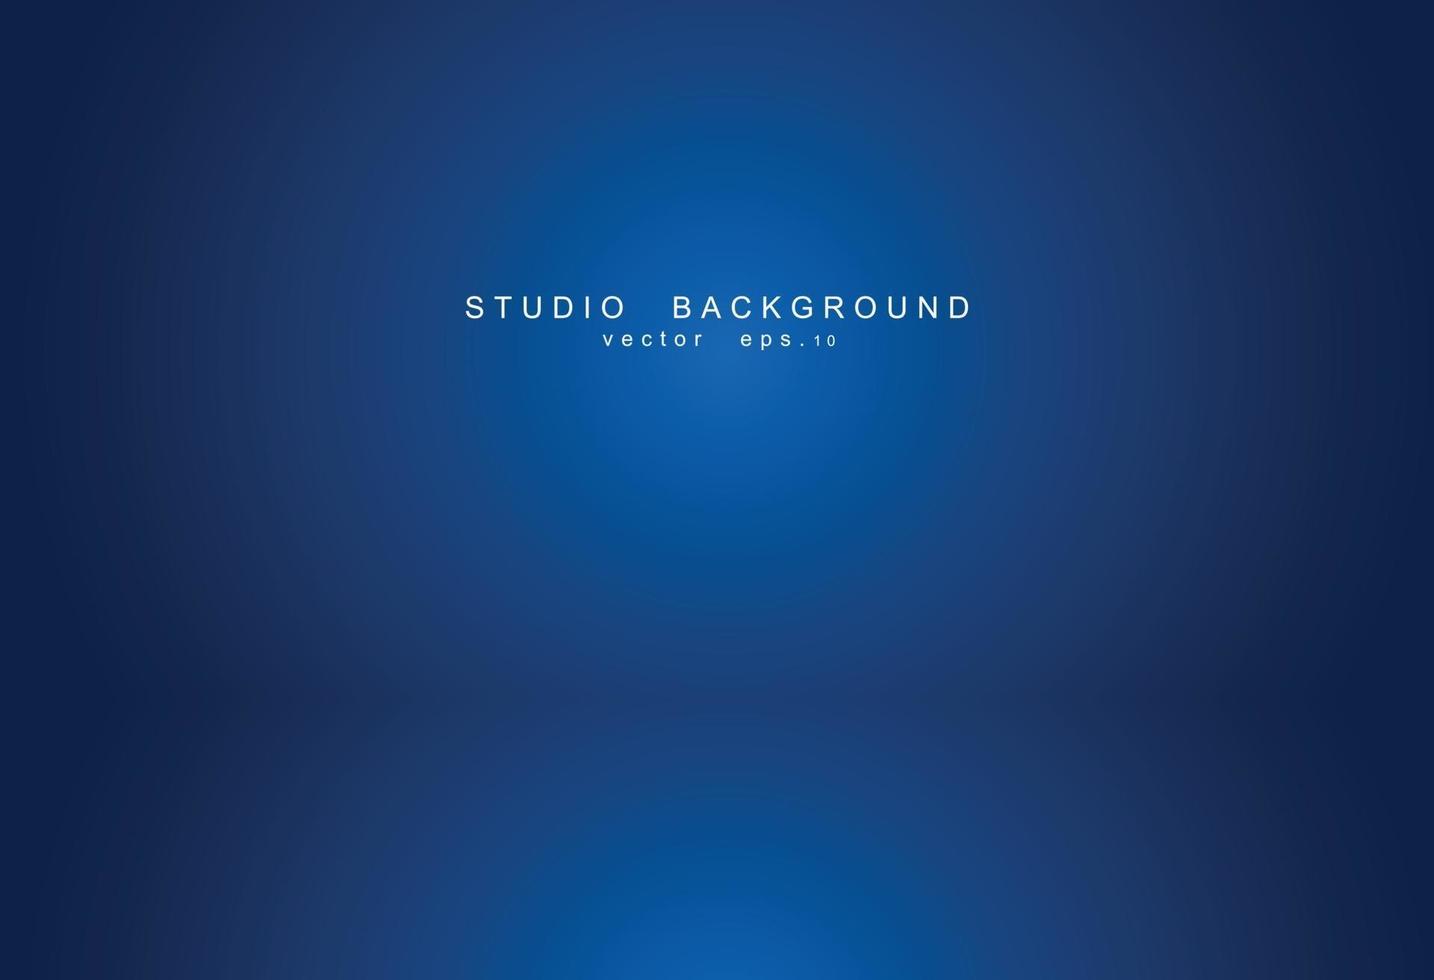 sfondo blu camera studio vuoto. interni luminosi con copyspace per il tuo progetto creativo. illustrazione vettoriale eps 10